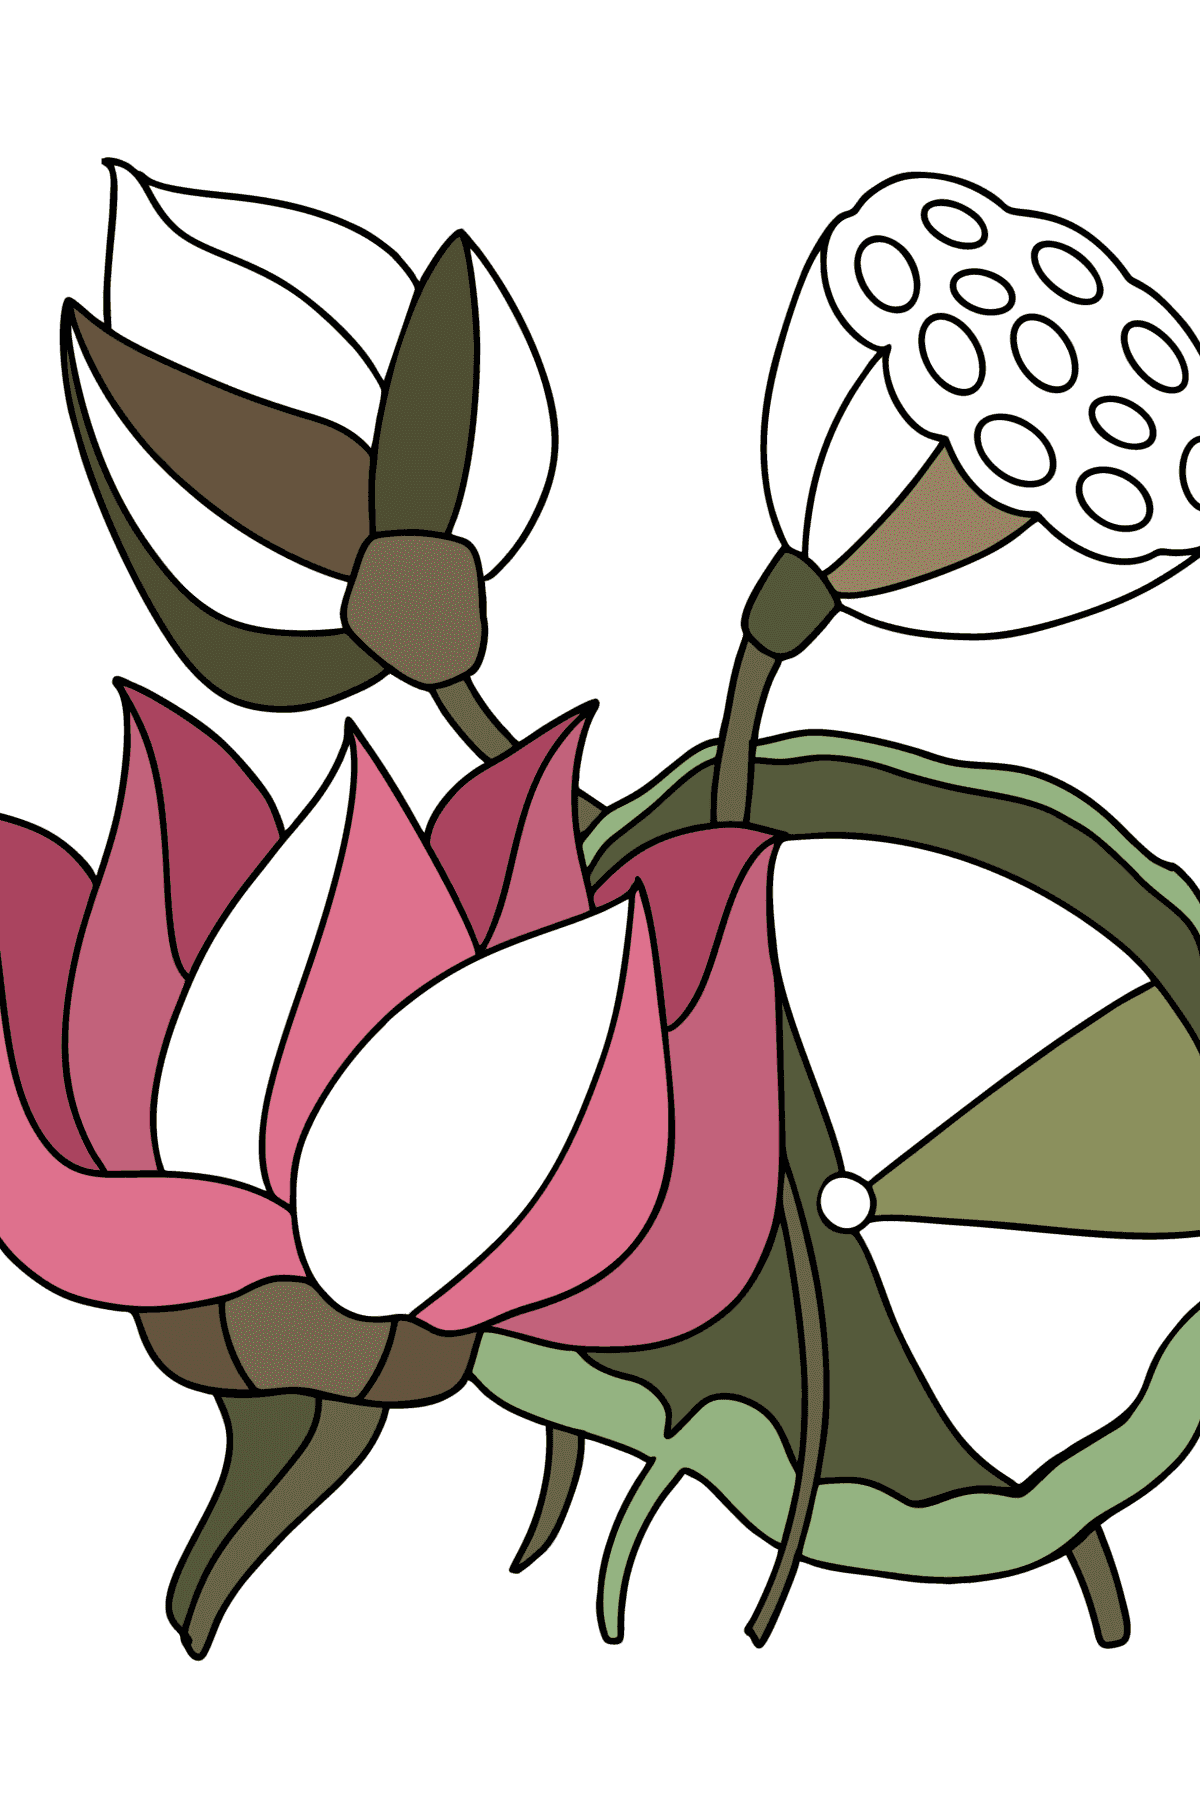 Tegning til fargelegging Lotus - Tegninger til fargelegging for barn